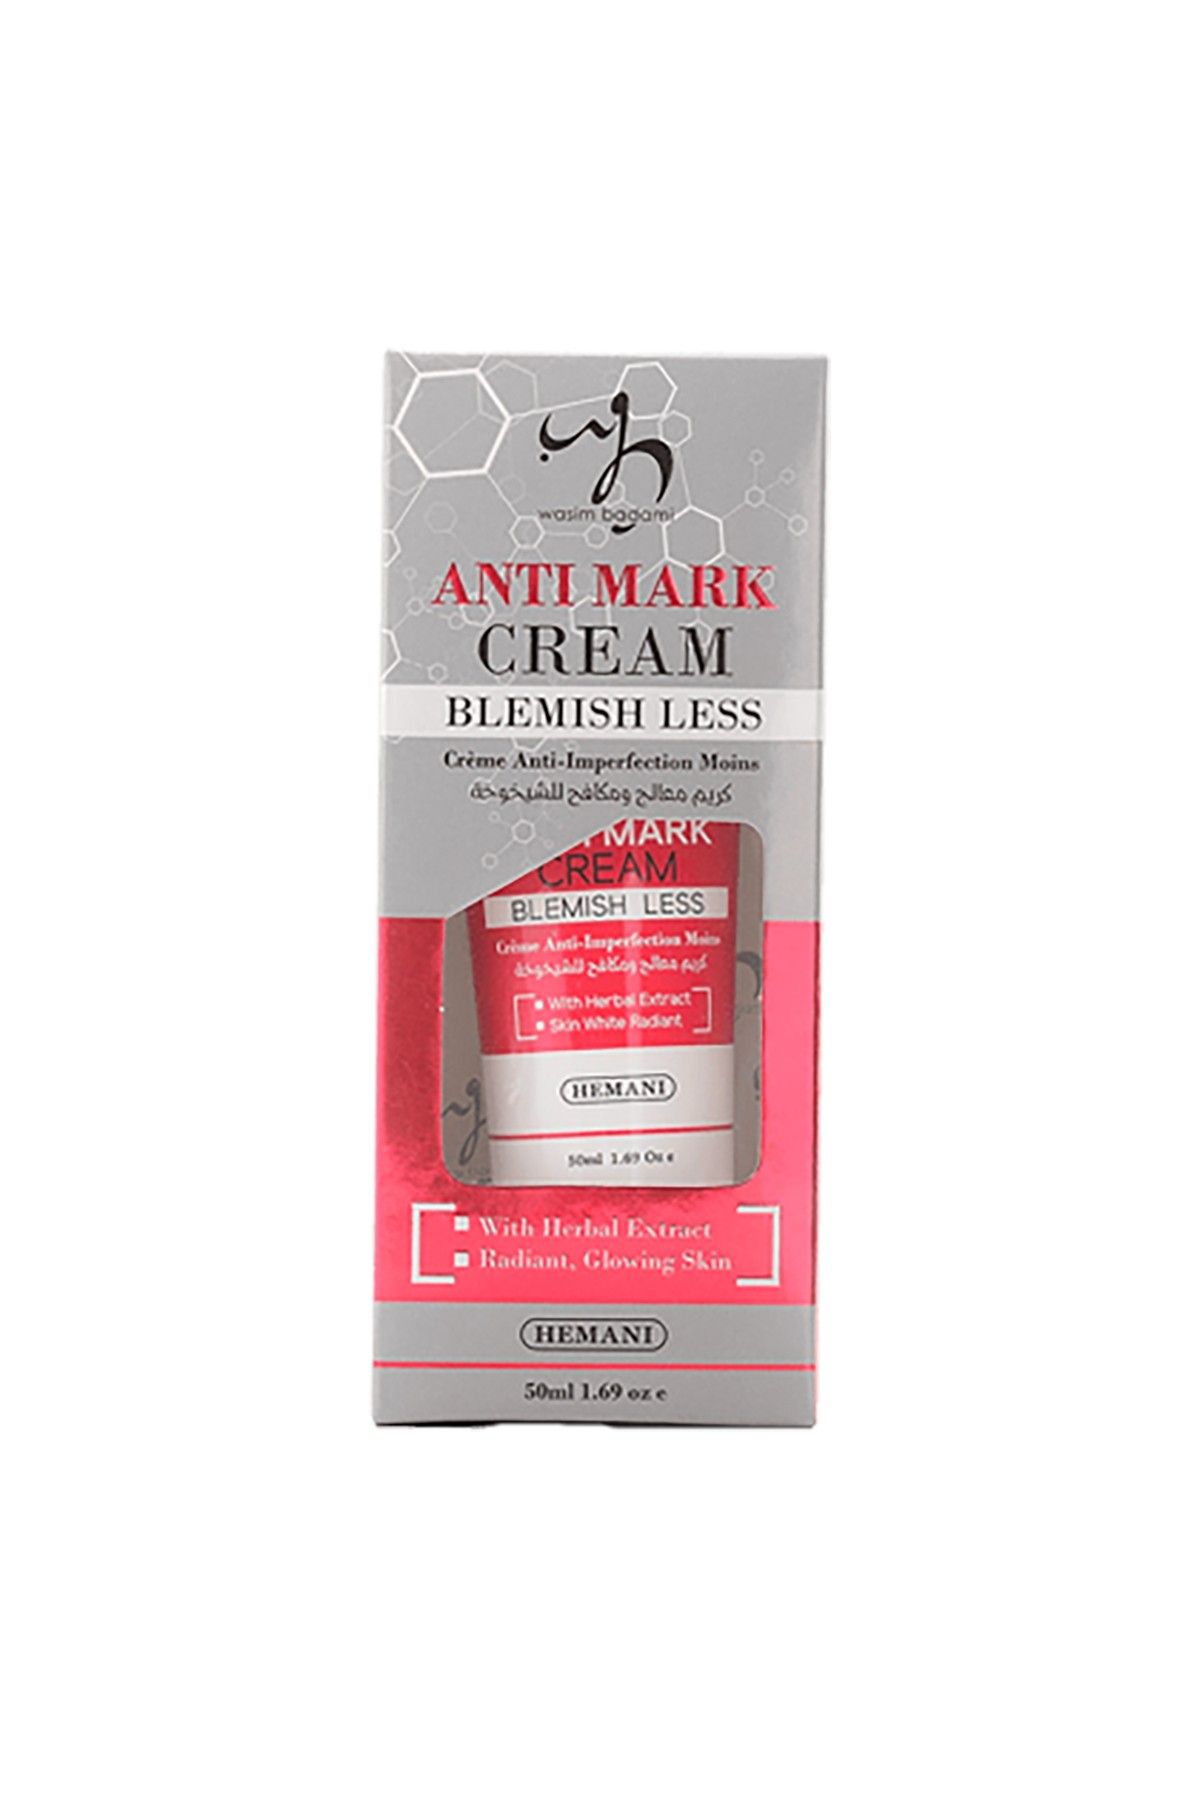 Anti Mark Cream Blemish Less